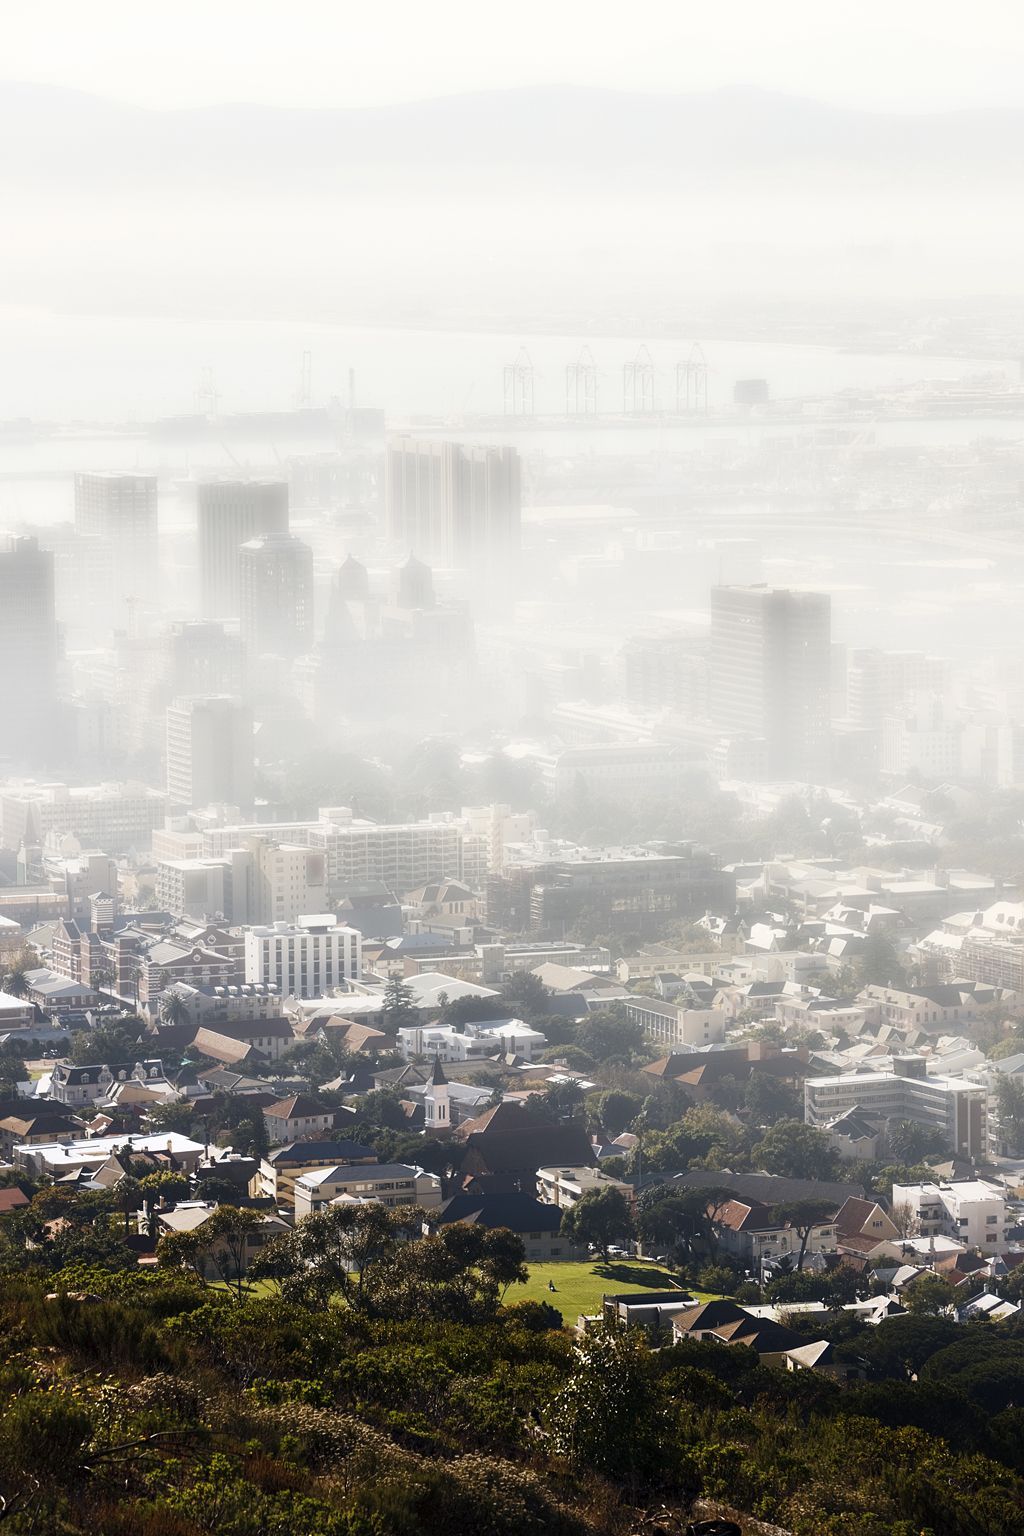 Foto: Podívejte se, jak smog zahaluje život ve městech - Jihoafrická republika